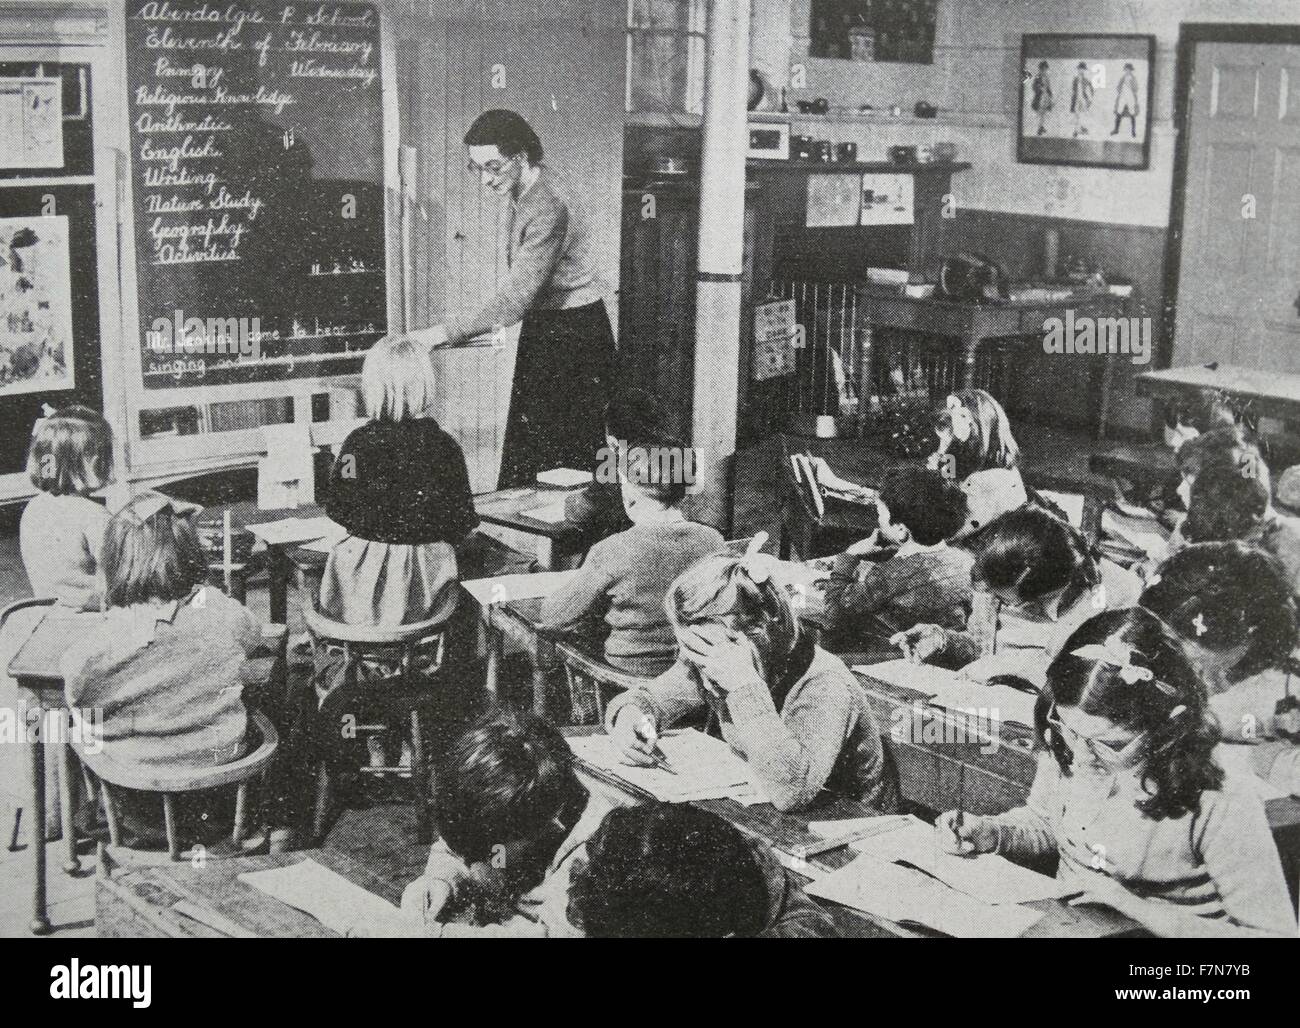 Unterricht in einer Dorfschule von einem Lehrer erfordert großen Einfallsreichtum, für die Kinder, deren Alter von 5-12 Jahren reichen sind in den verschiedenen Phasen und jede Gruppe braucht getrennten Unterricht. 1950 Stockfoto